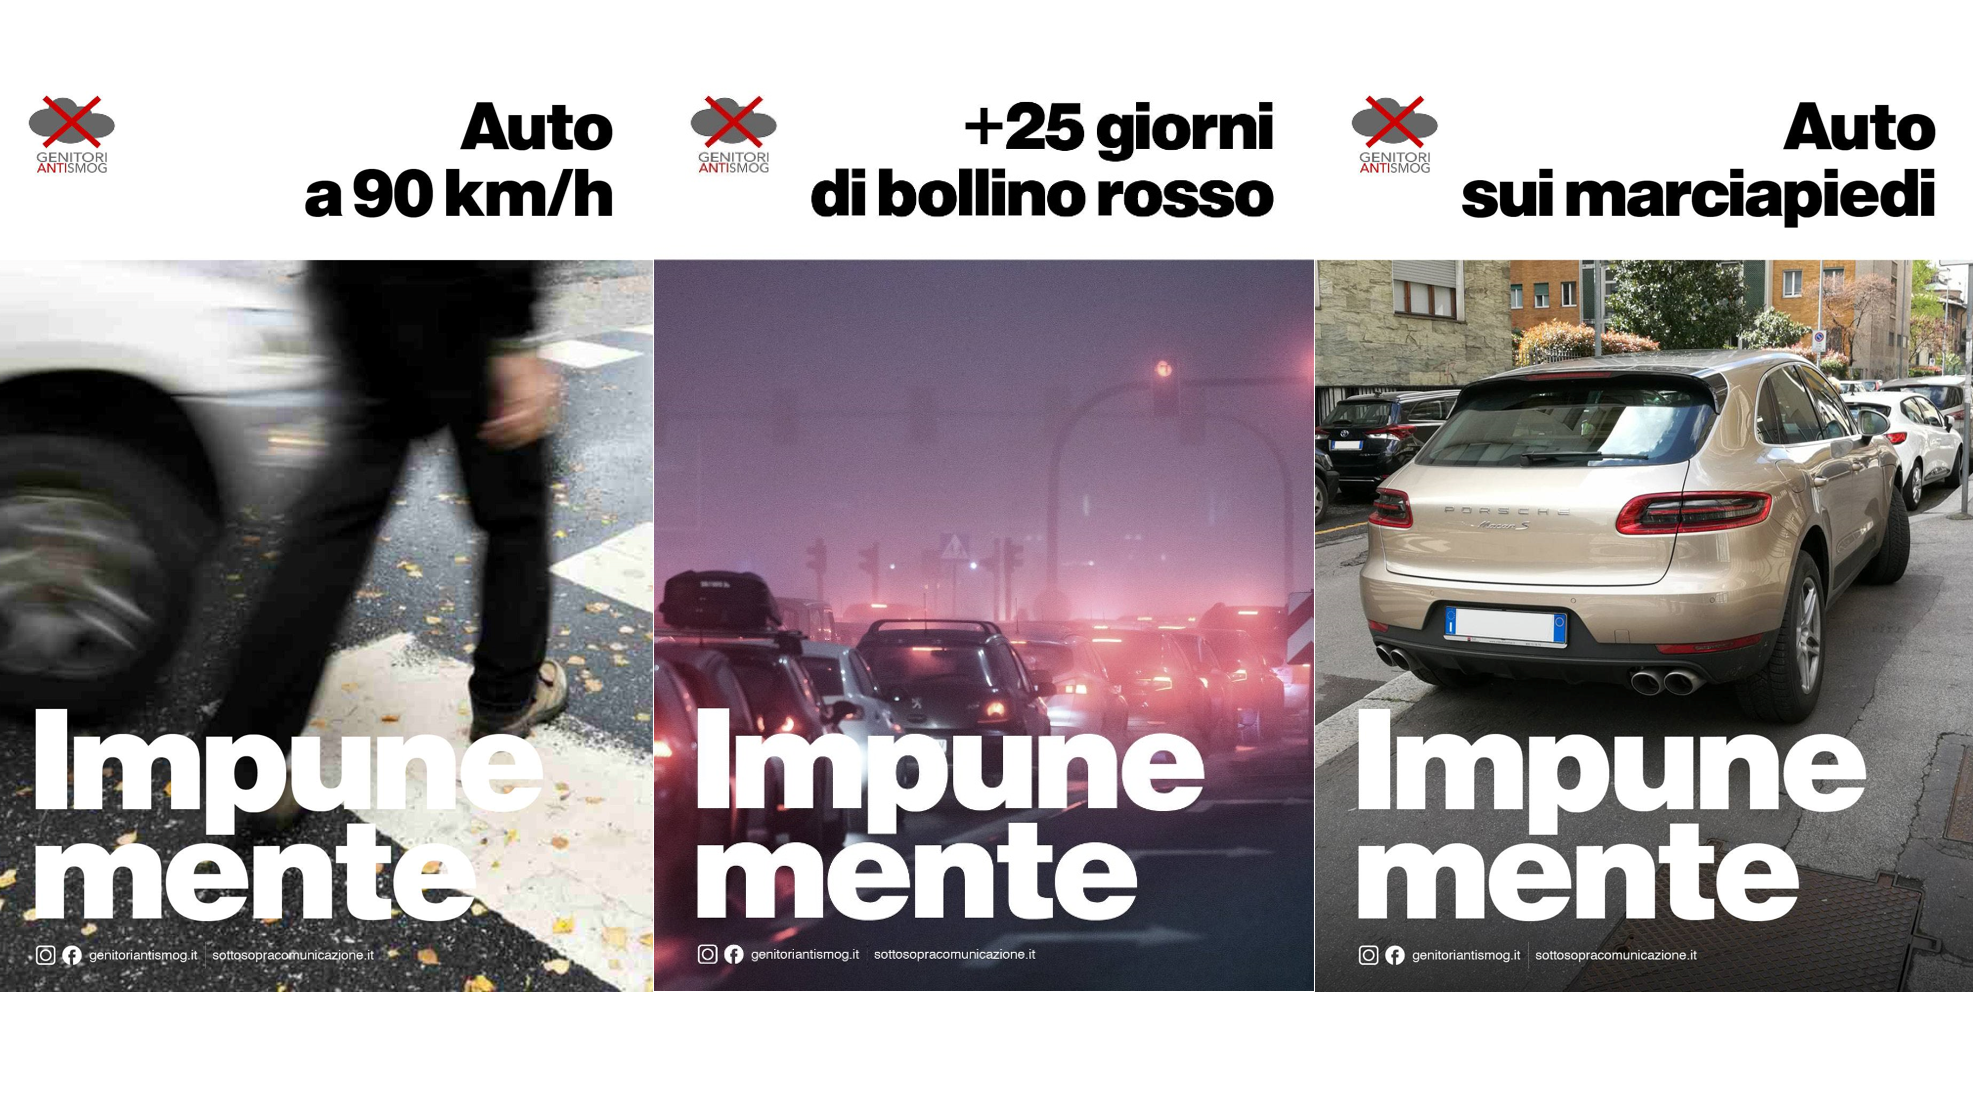 Milano, da “Gentilmente” a “Impunemente”: la contro-campagna dei Genitori Antismog